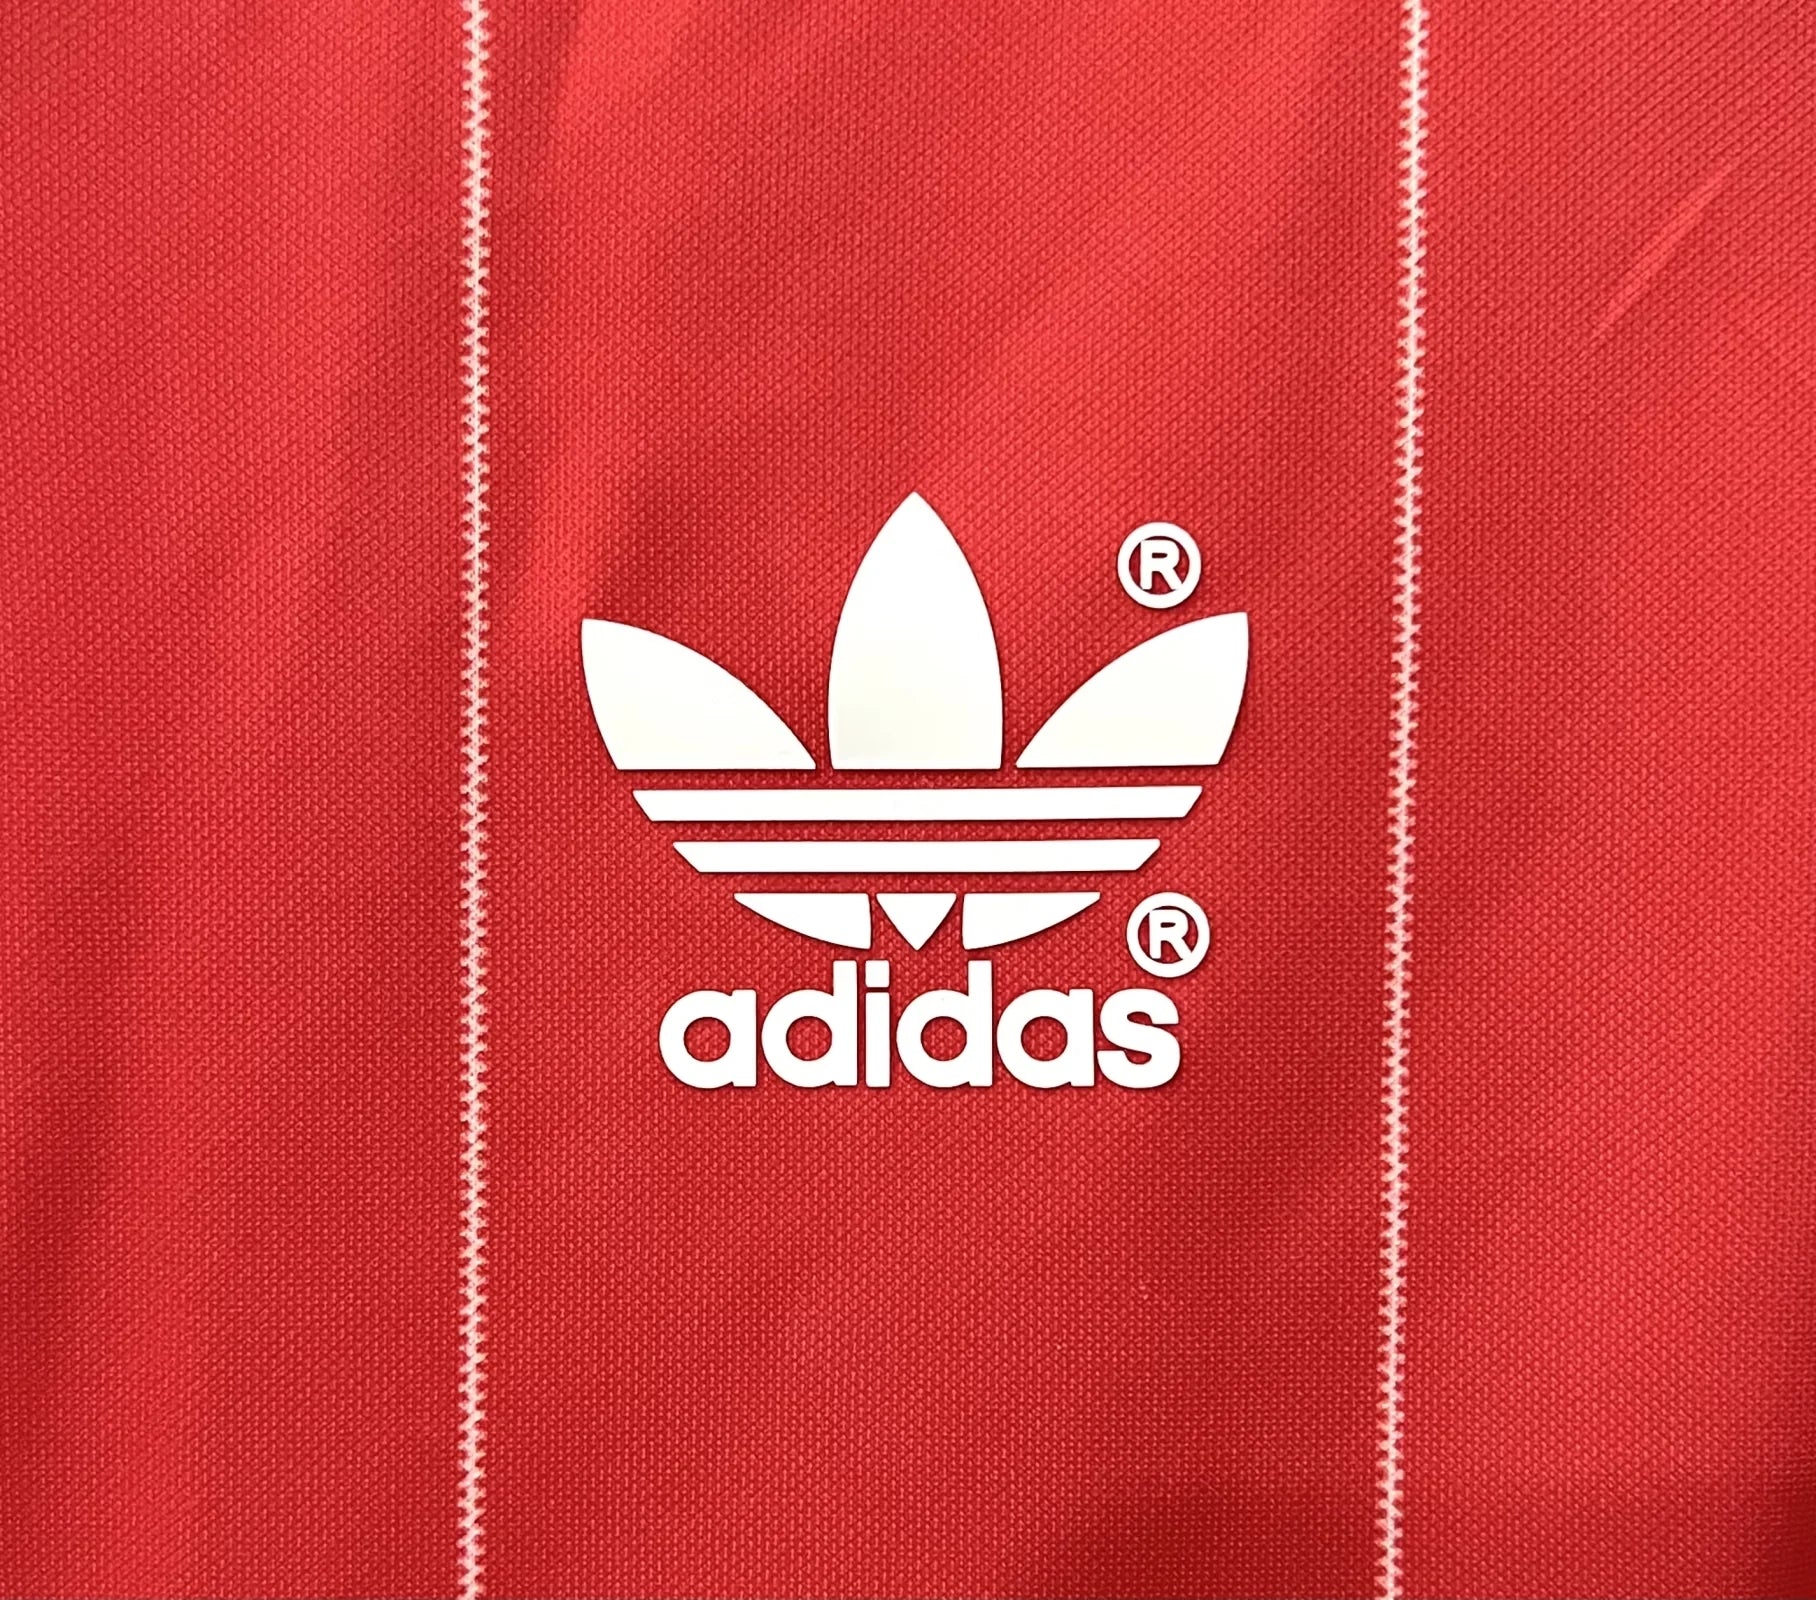 HSV 1982/83 Champions League Kit